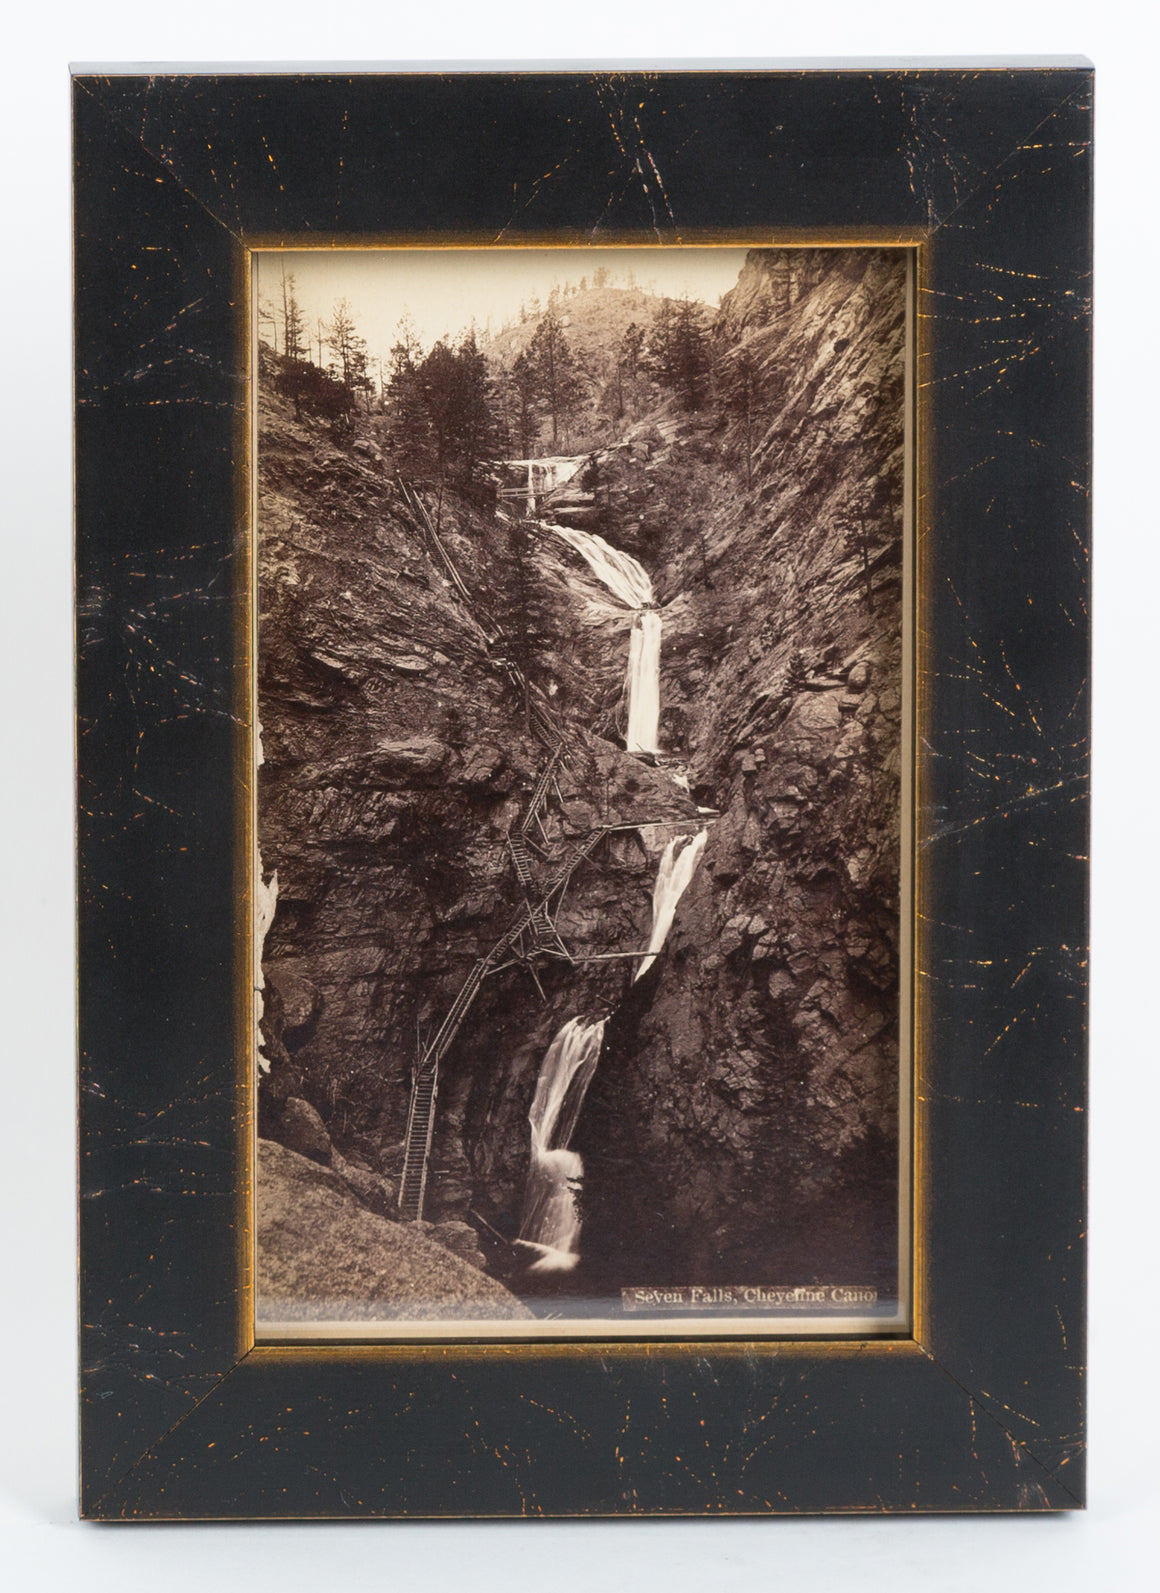 Seven Falls Colorado Springs Photographic Postcard, Circa 1880